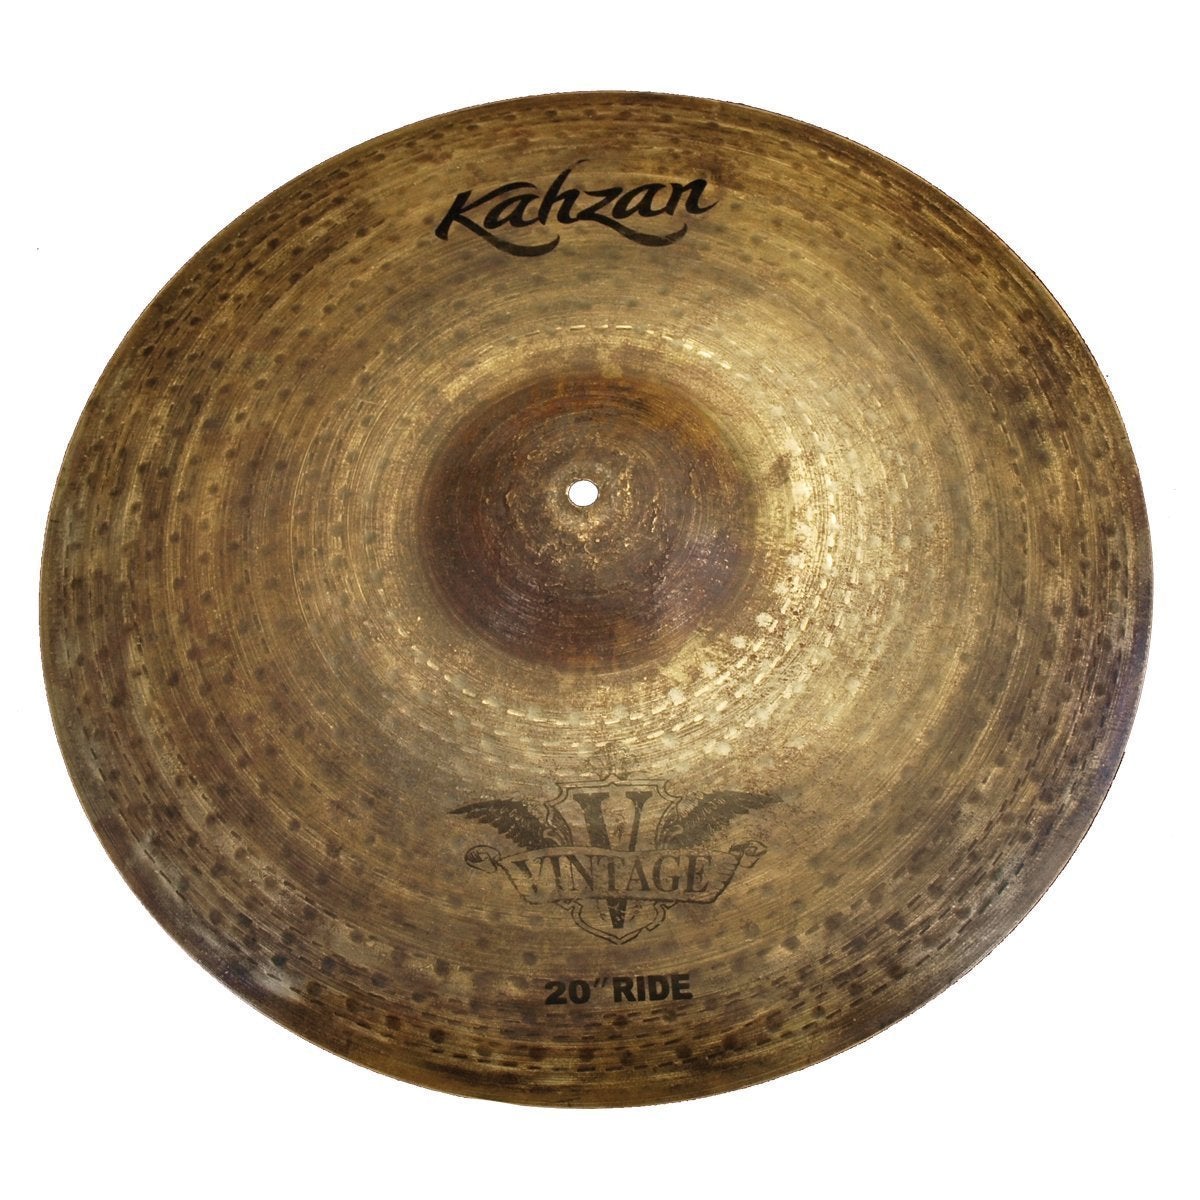 Kahzan 'Vintage Series' Ride Cymbal (20")